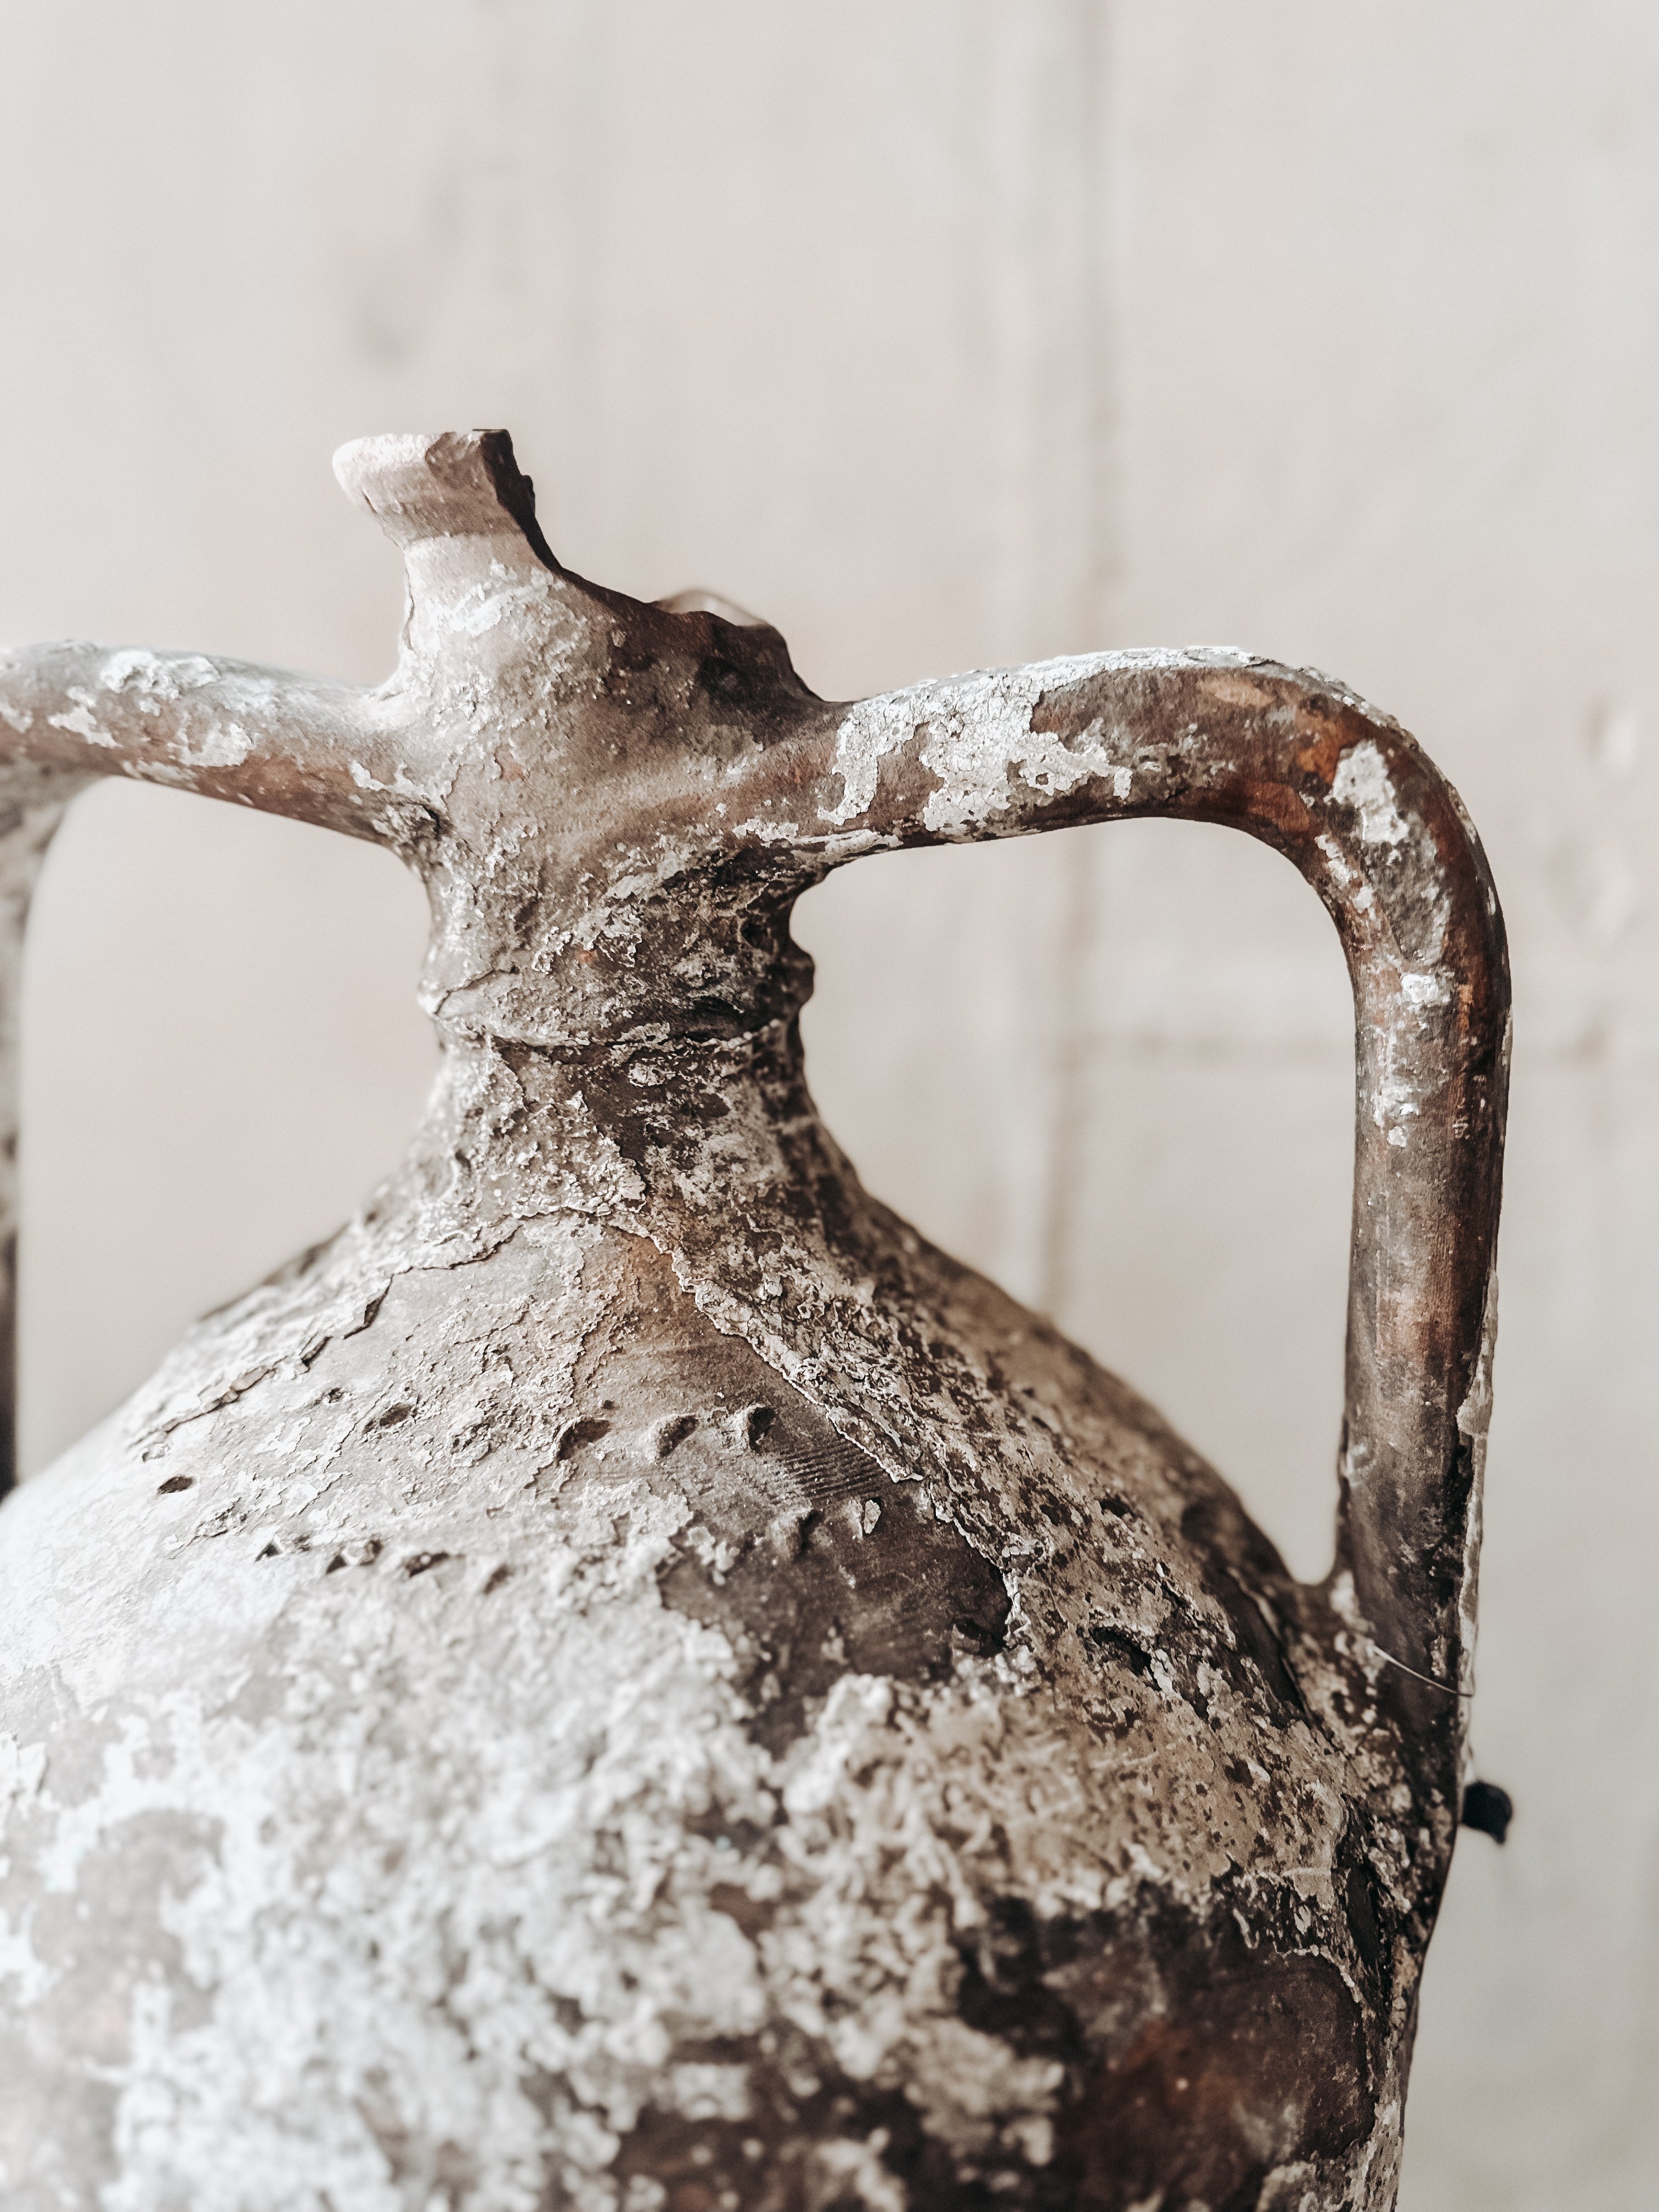 Patina amphora